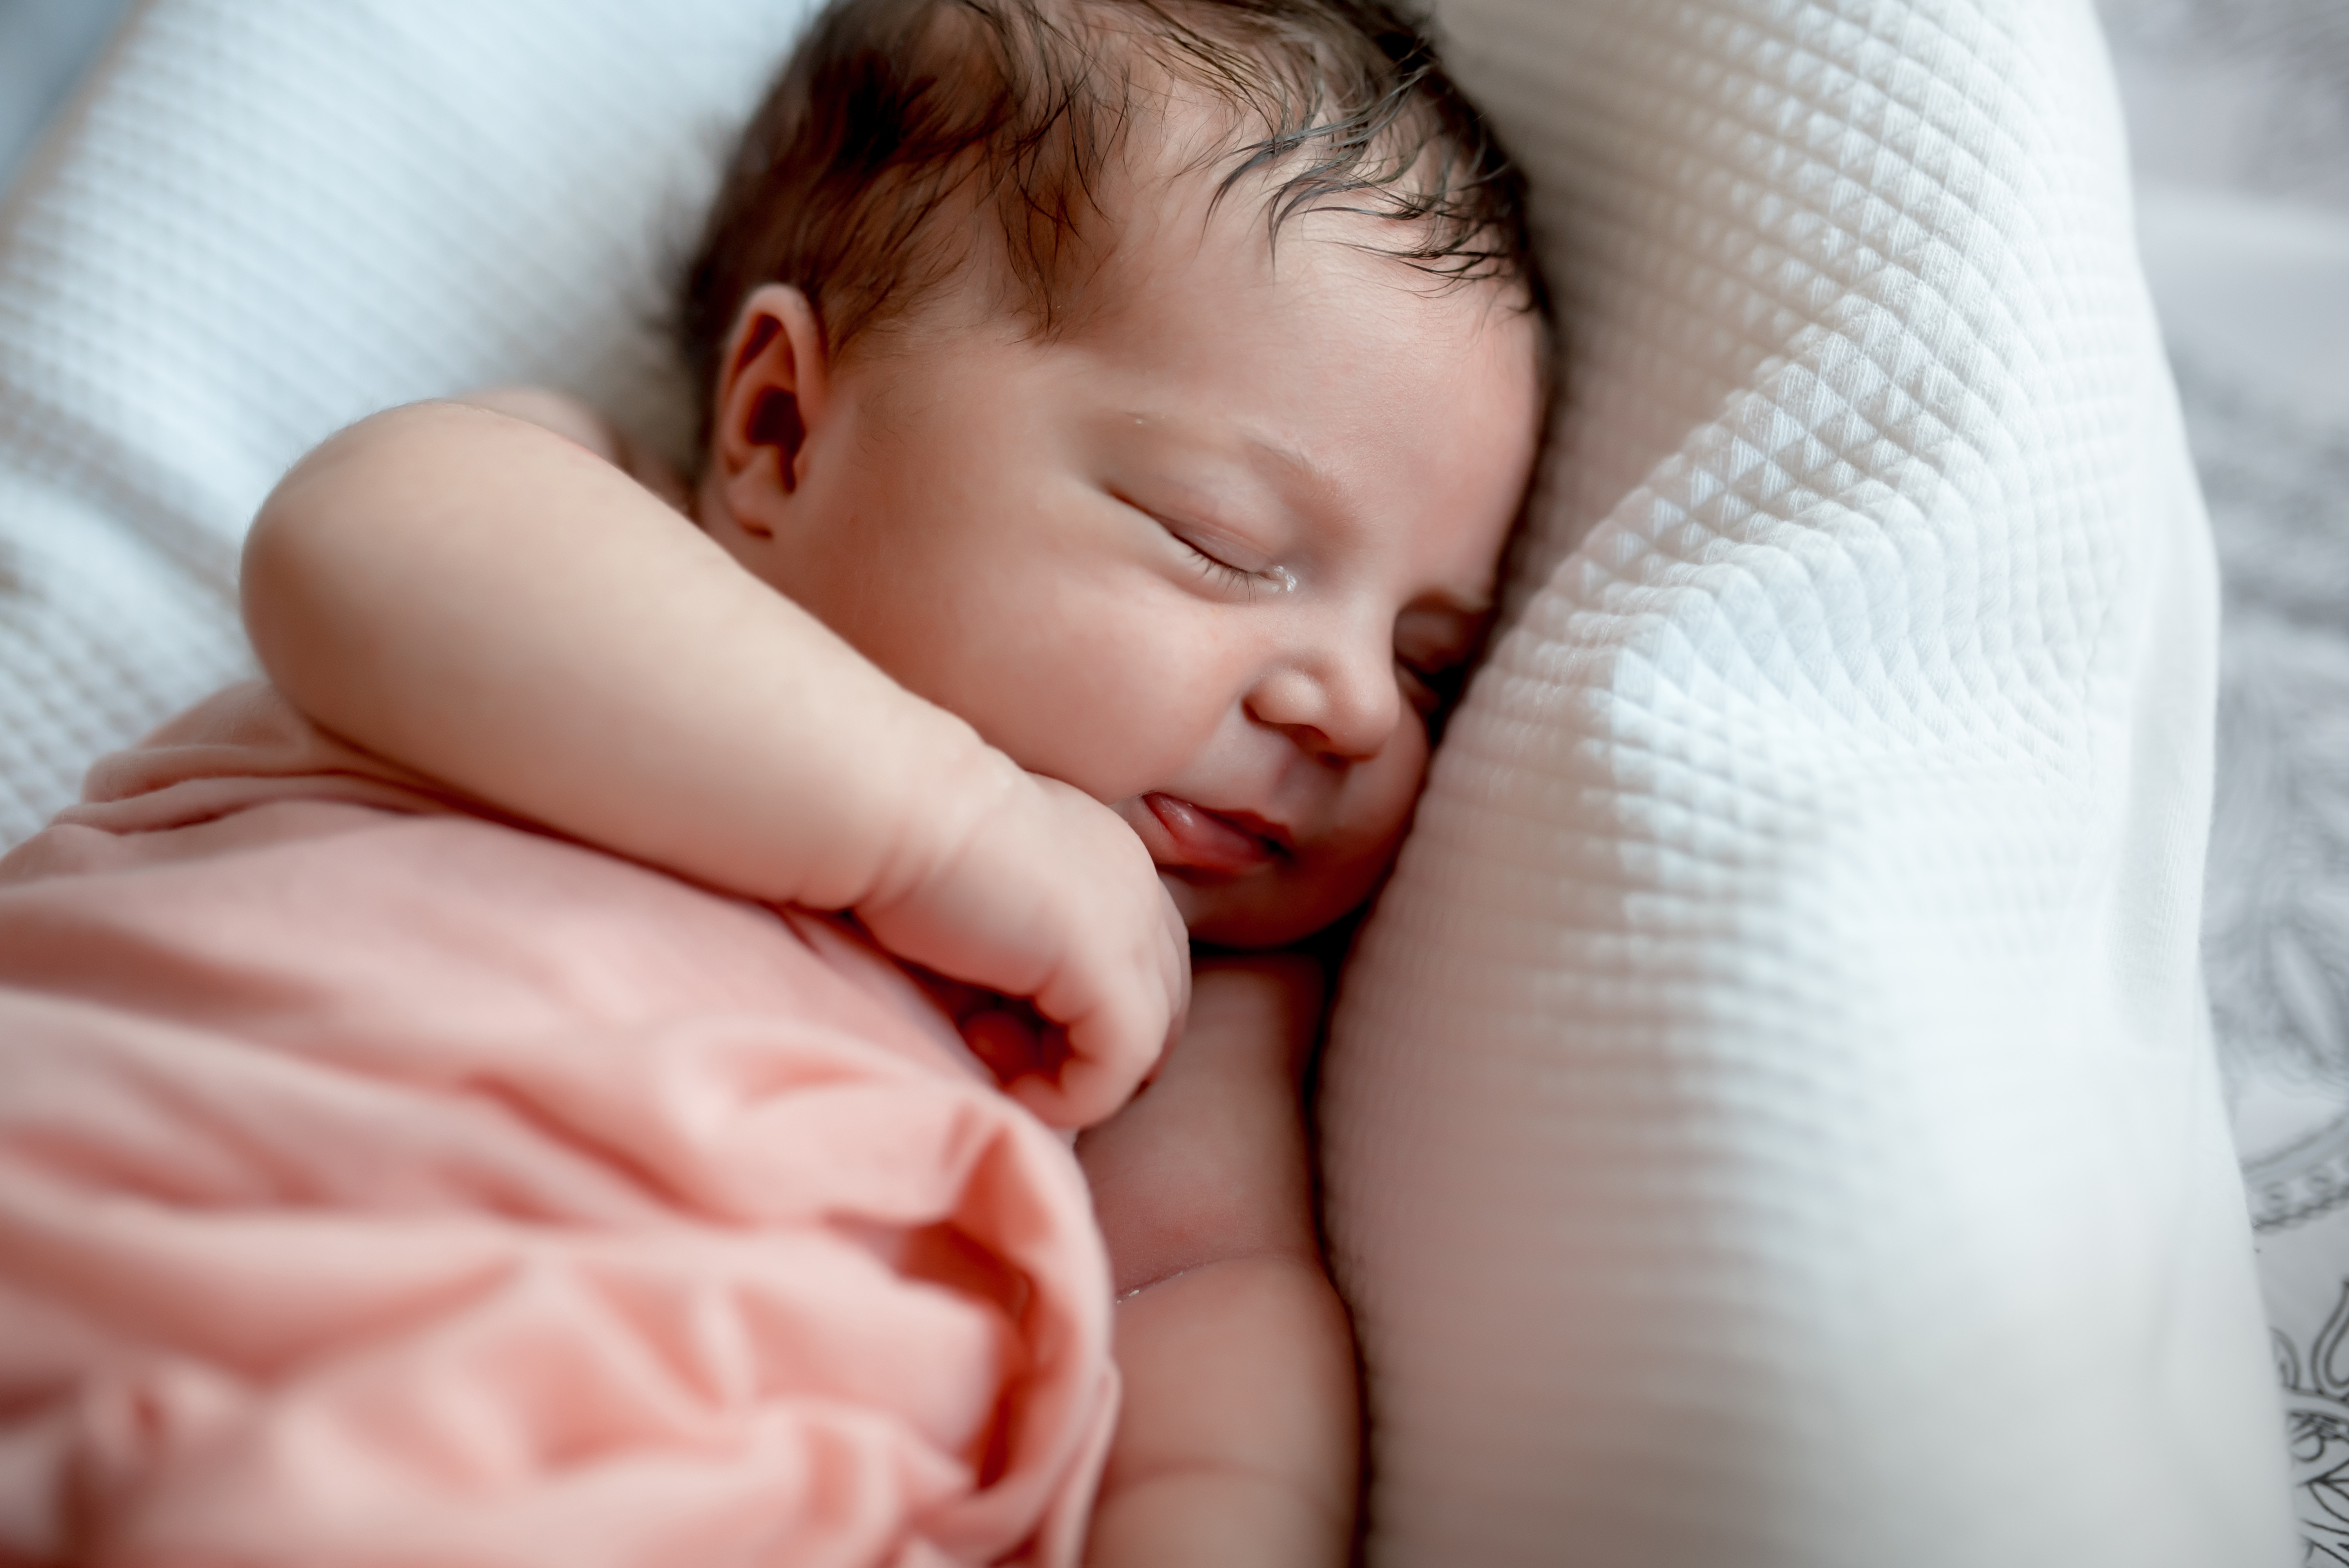 Newborn sleeping in bed | Source: Shutterstock.com